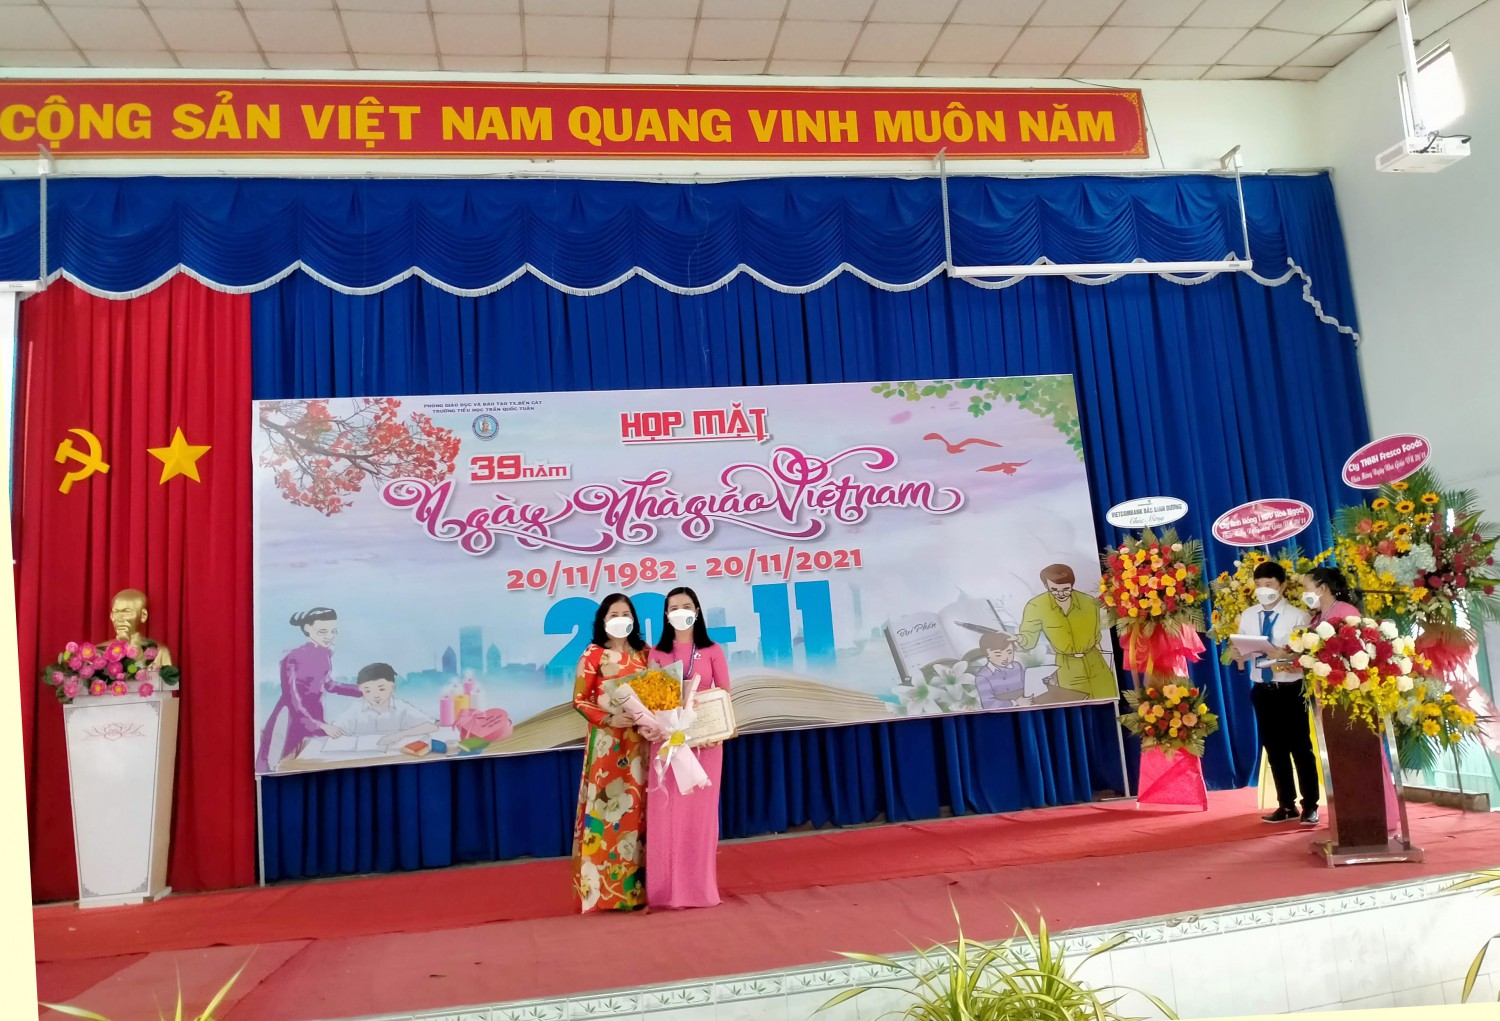 Co Minh nhan bang khen cho truong